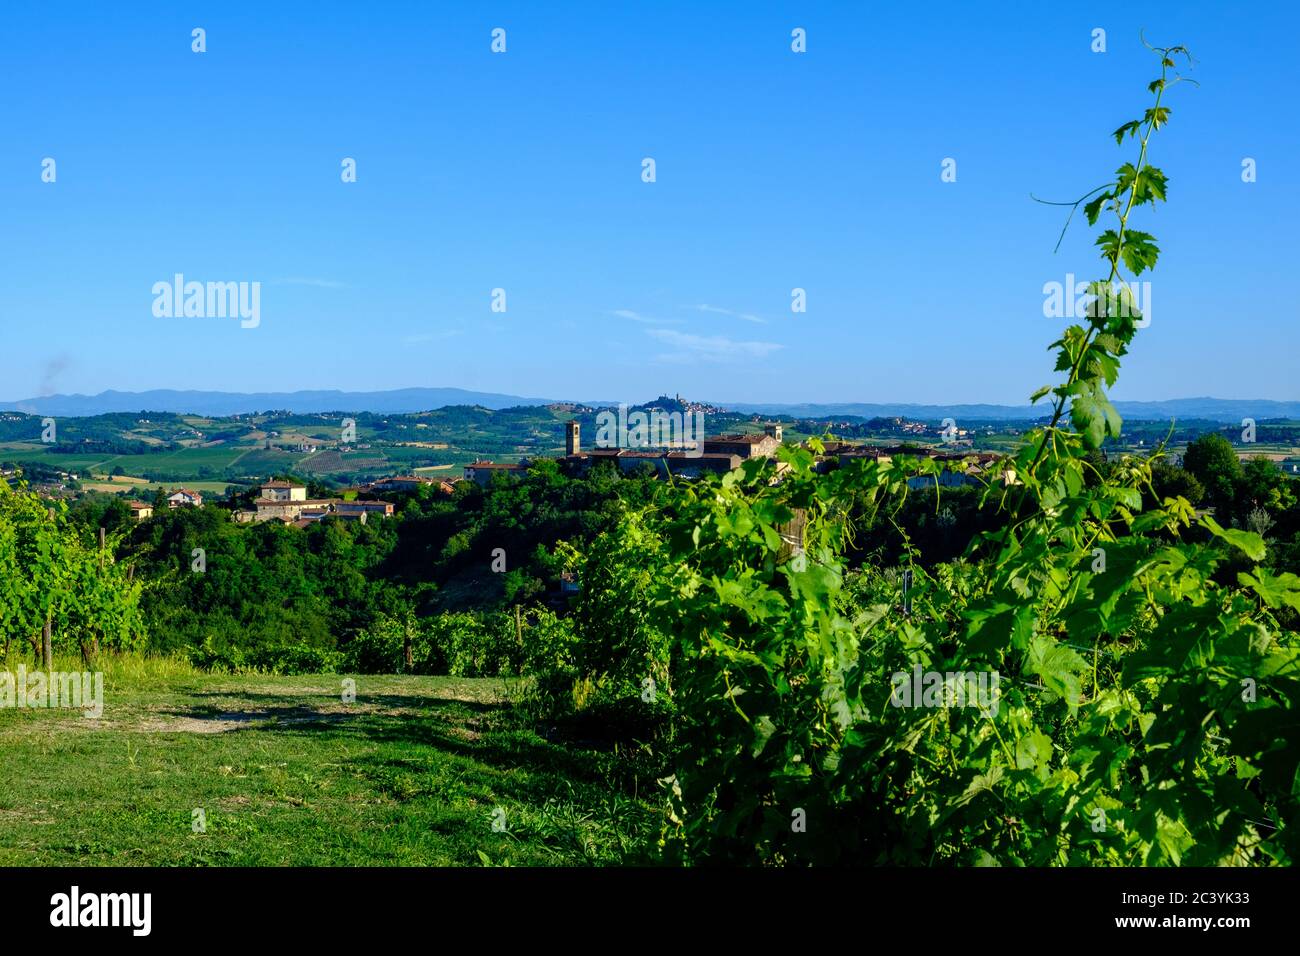 Vineyards in Rosignano Monferrato, Piedmont, Italy Stock Photo